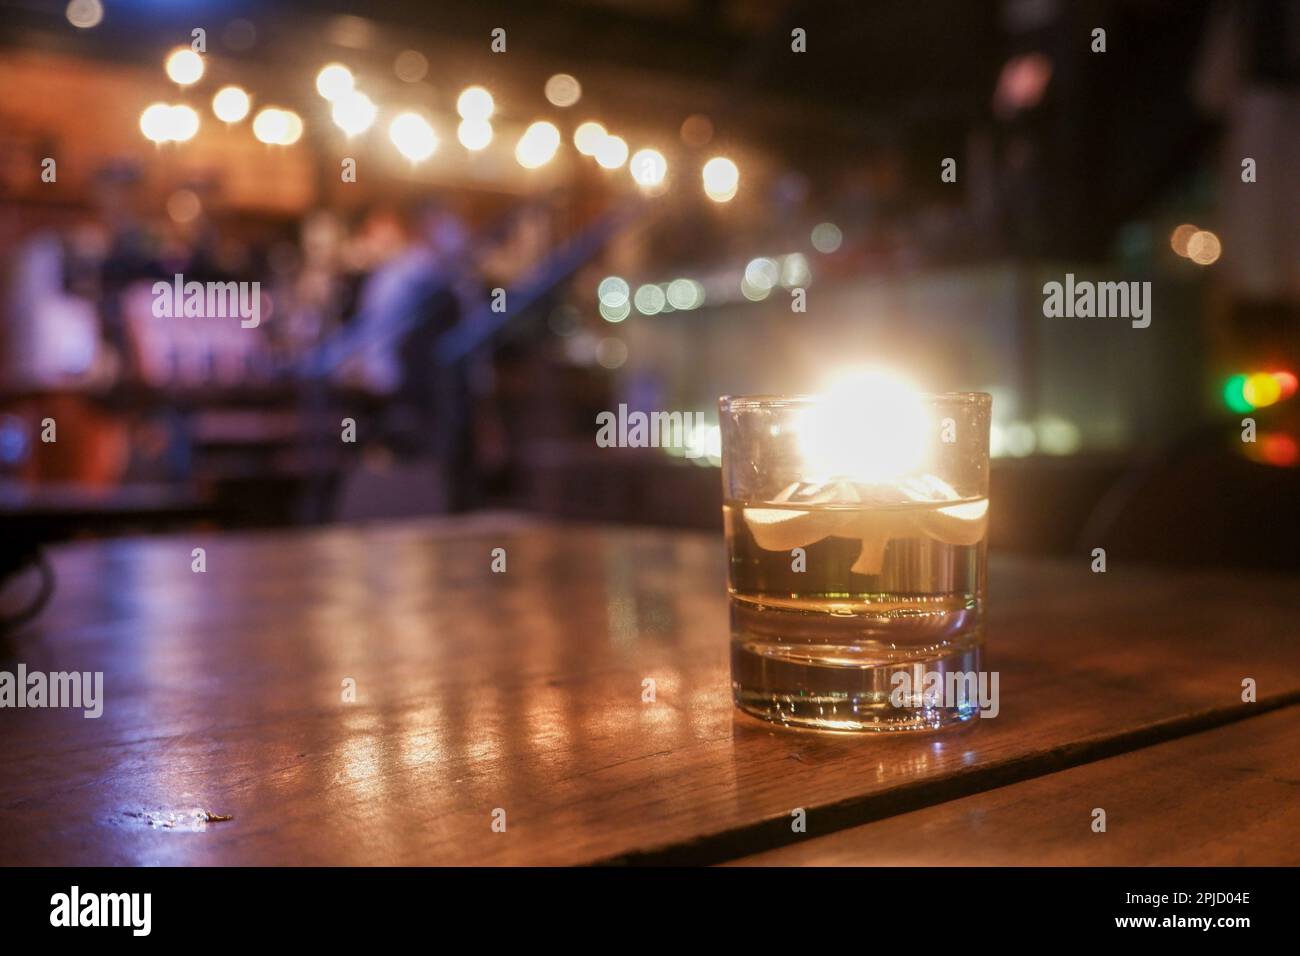 Bokeh-Hintergrund der Nachtbar mit einer Kerze auf dem Rahmen Stockfoto